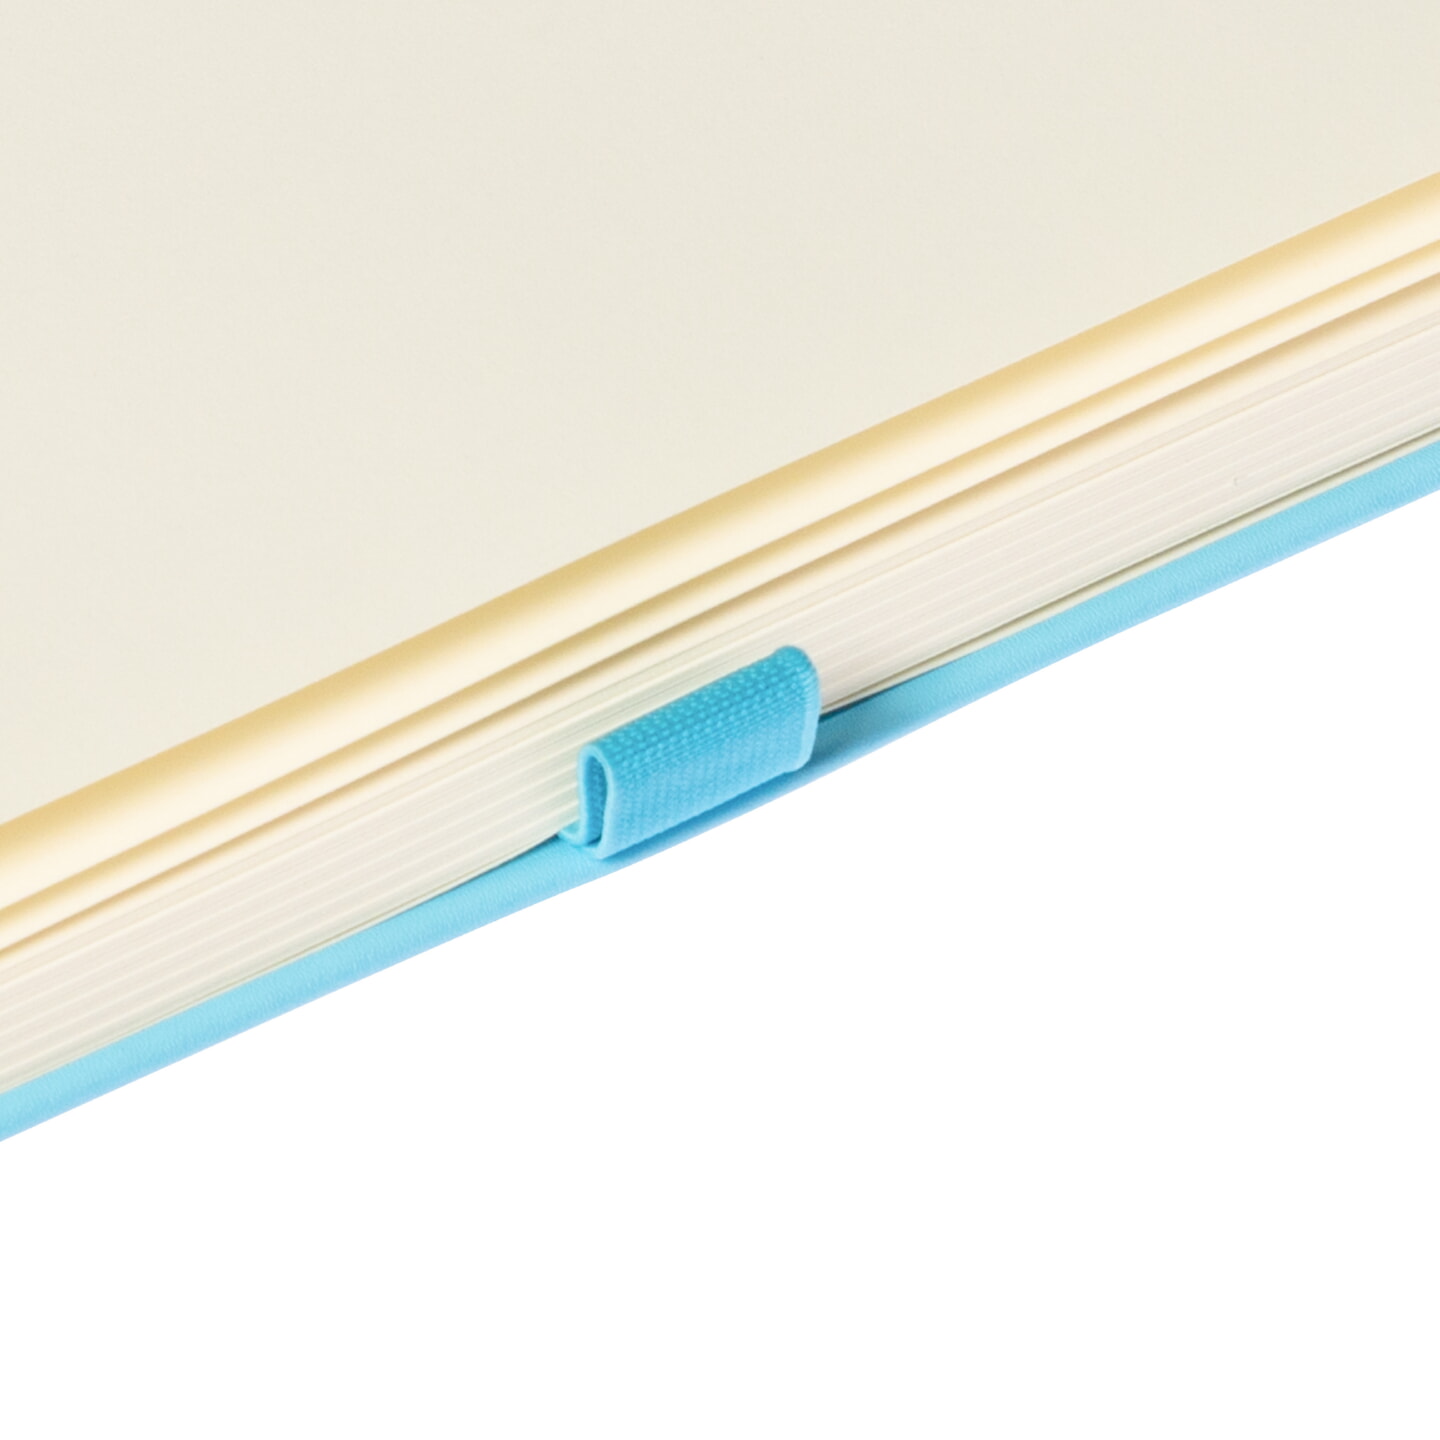 Блокнот для зарисовок Sketchmarker 140г/кв.м 80л твердая обложка Небесно-голубой 5 размеров в ассортименте